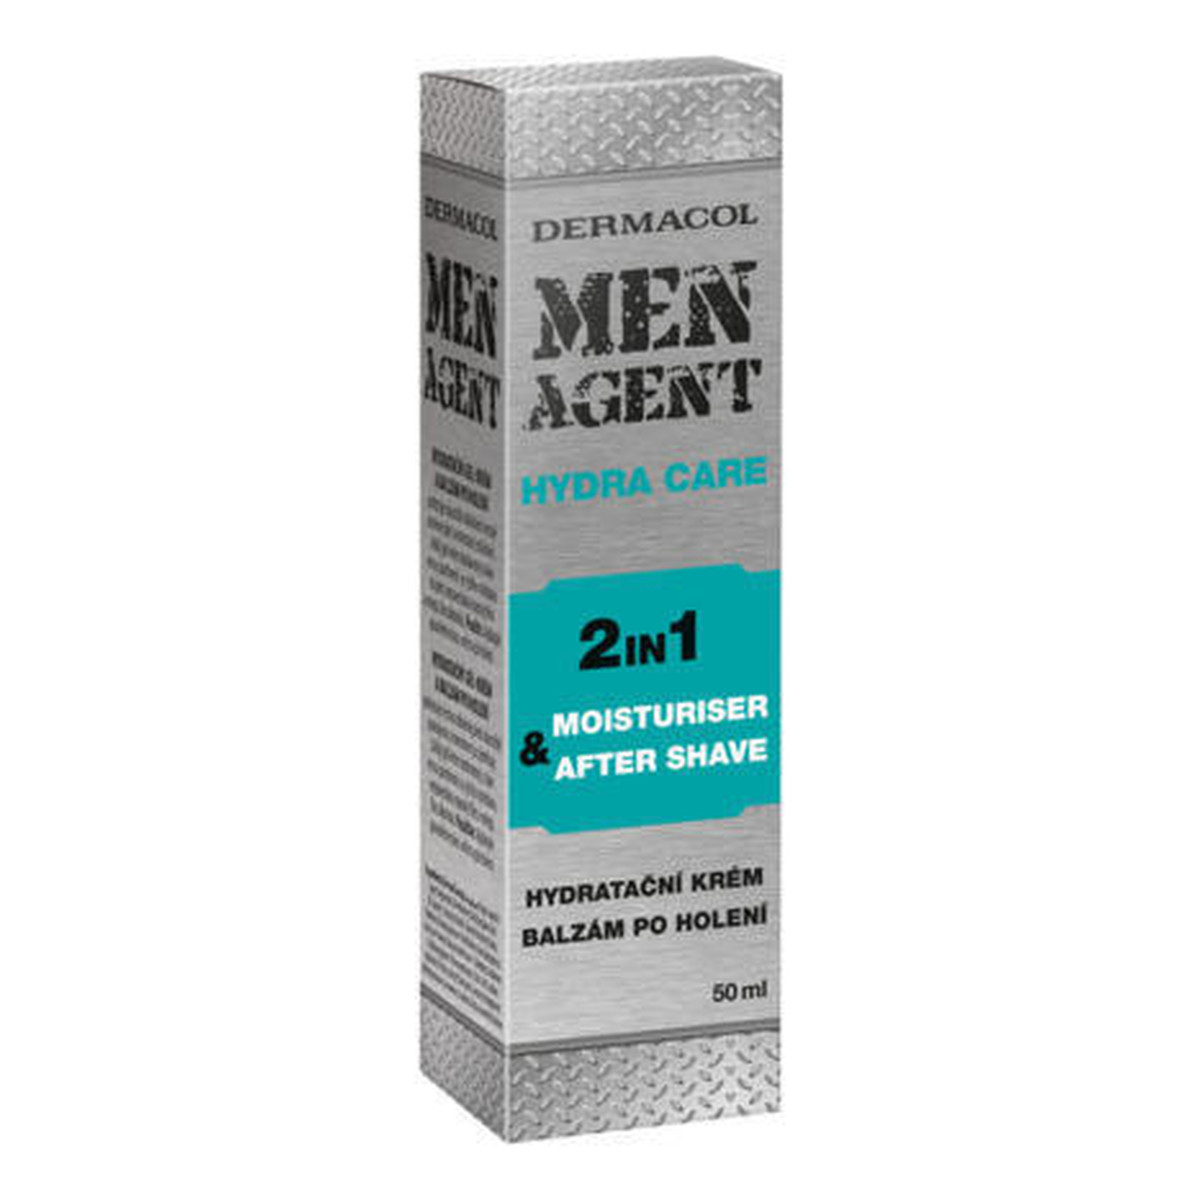 Dermacol MEN AGENT Hydra Care nawilżający balsam po goleniu 50ml